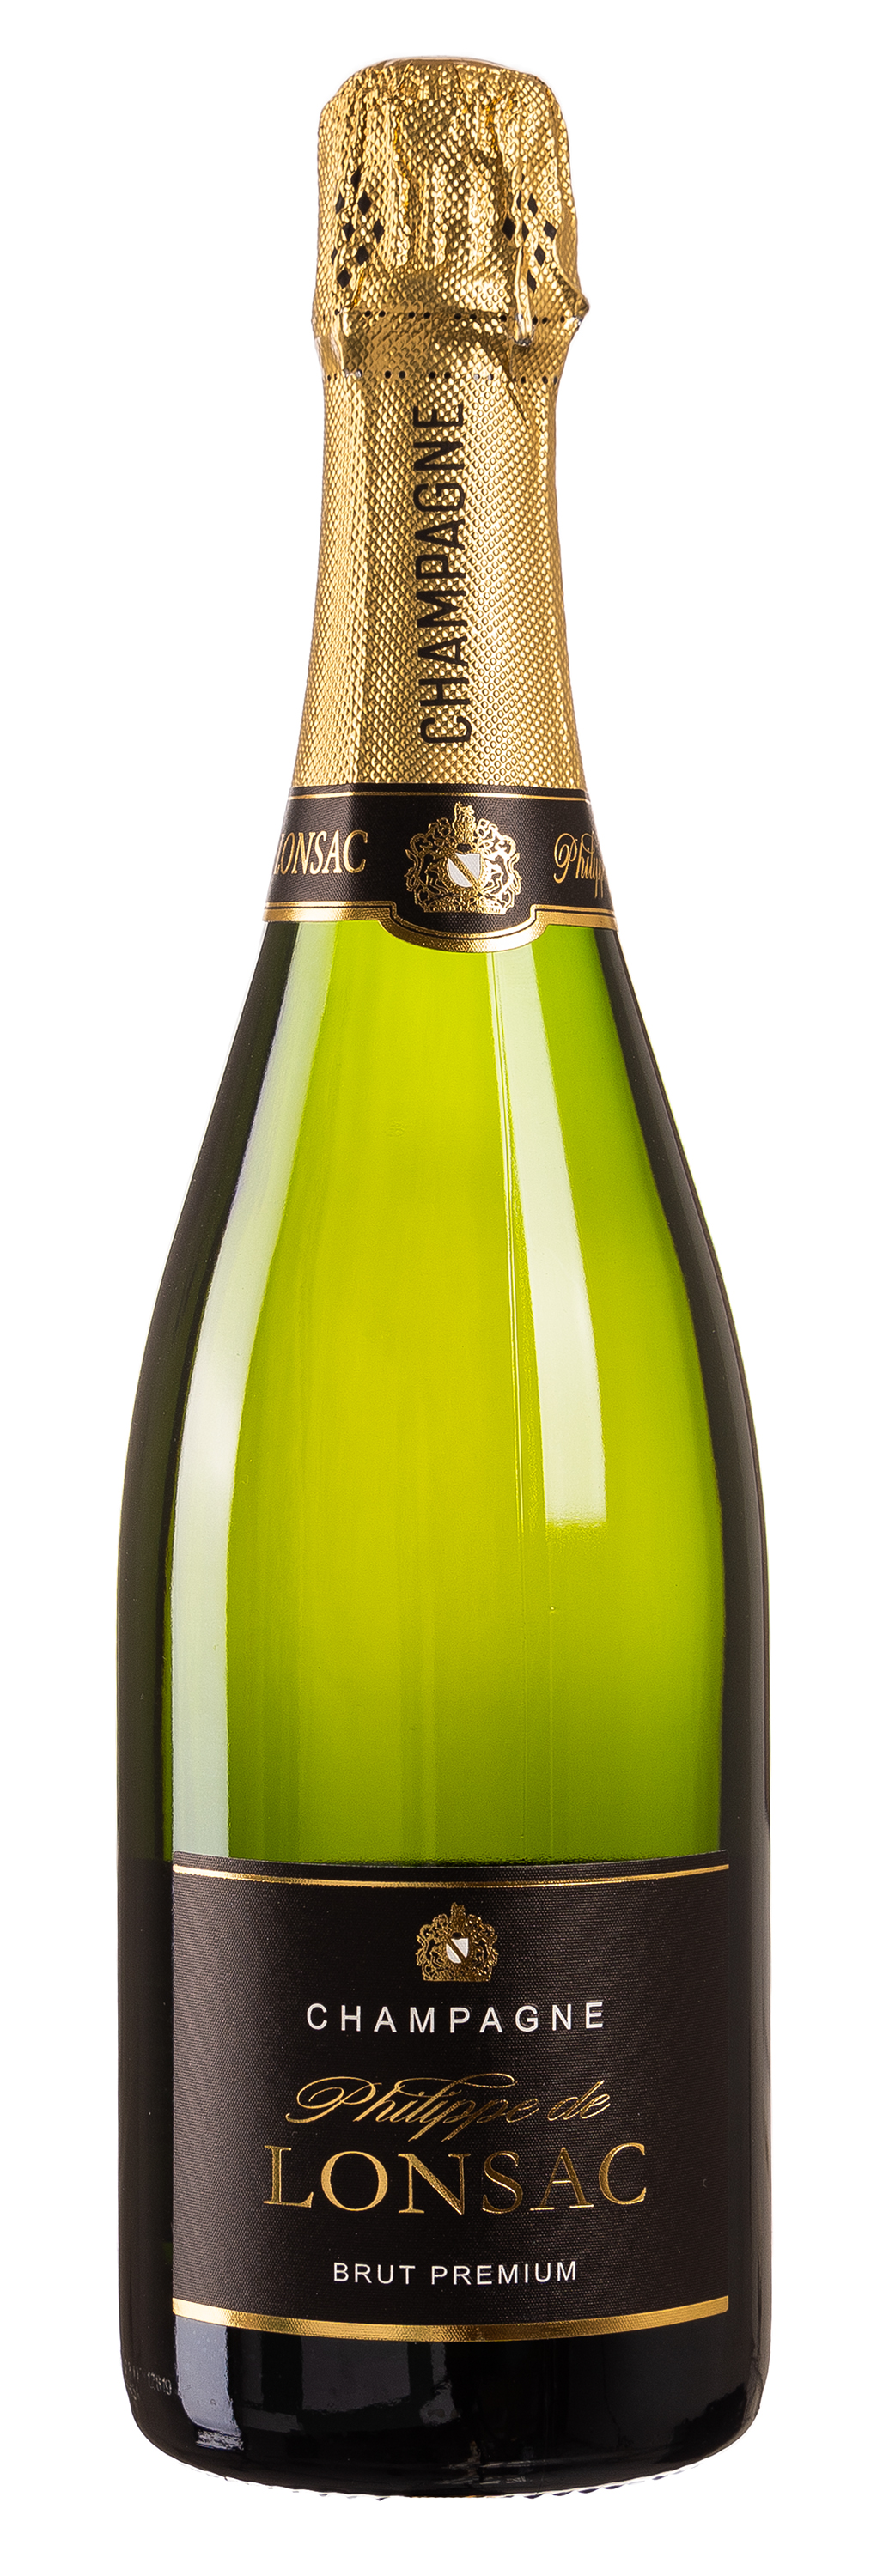 Philippe de Lonsac Champagne Brut 12% vol. 0,75L